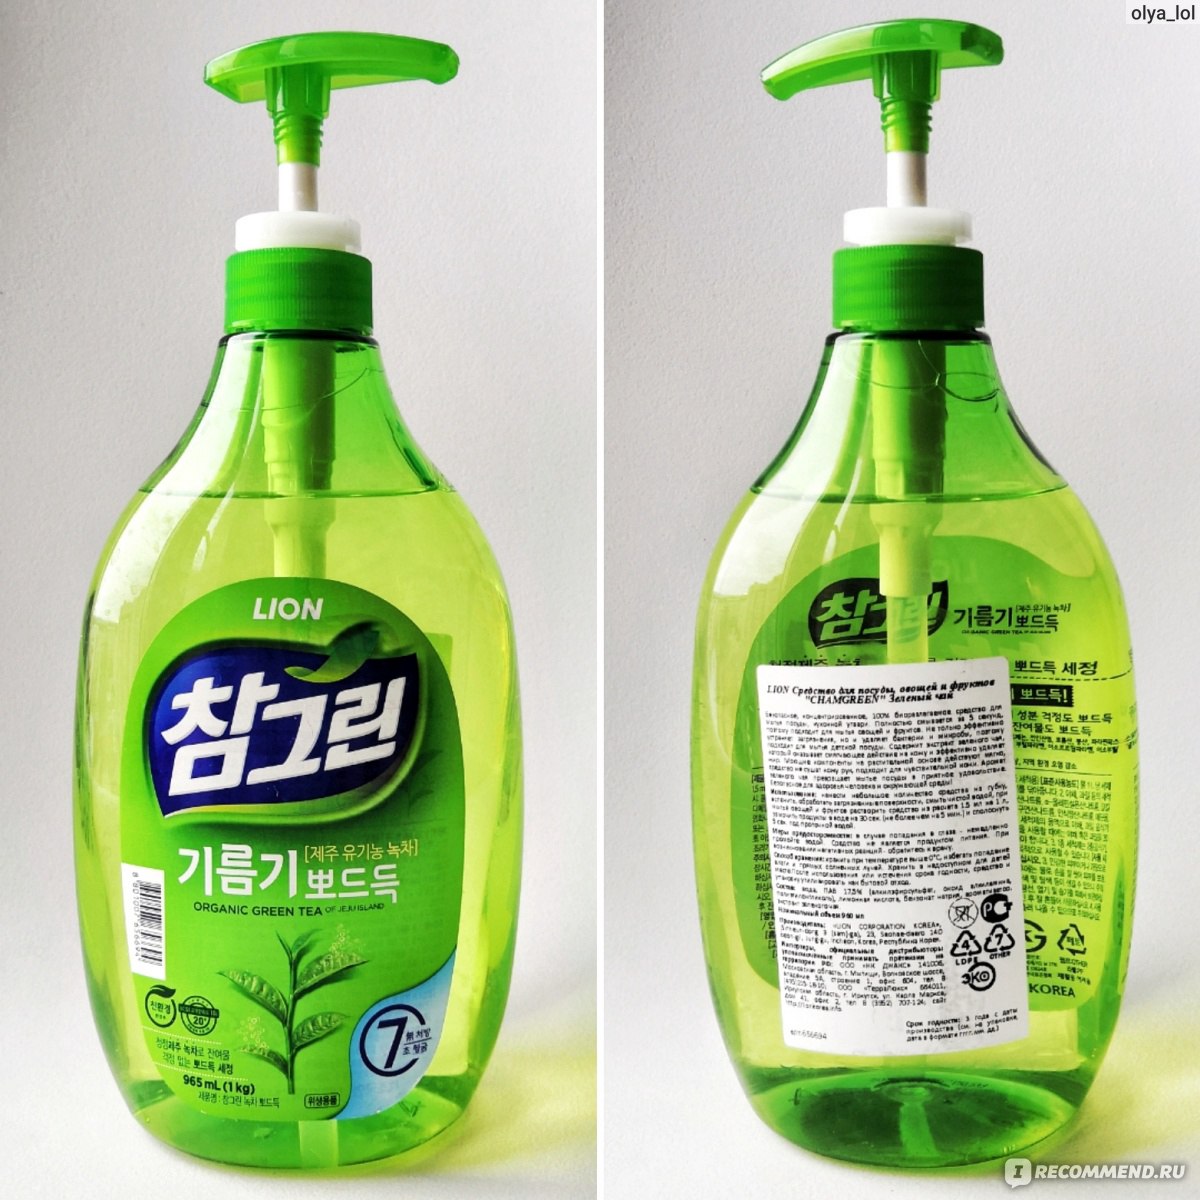 Lion средство для мытья посуды. Lion Chamgreen средство для мытья посуды. Корейская бытовая химия CJ Lion. Средство для посуды Лион зеленый чай. Корейское средство для посуды.